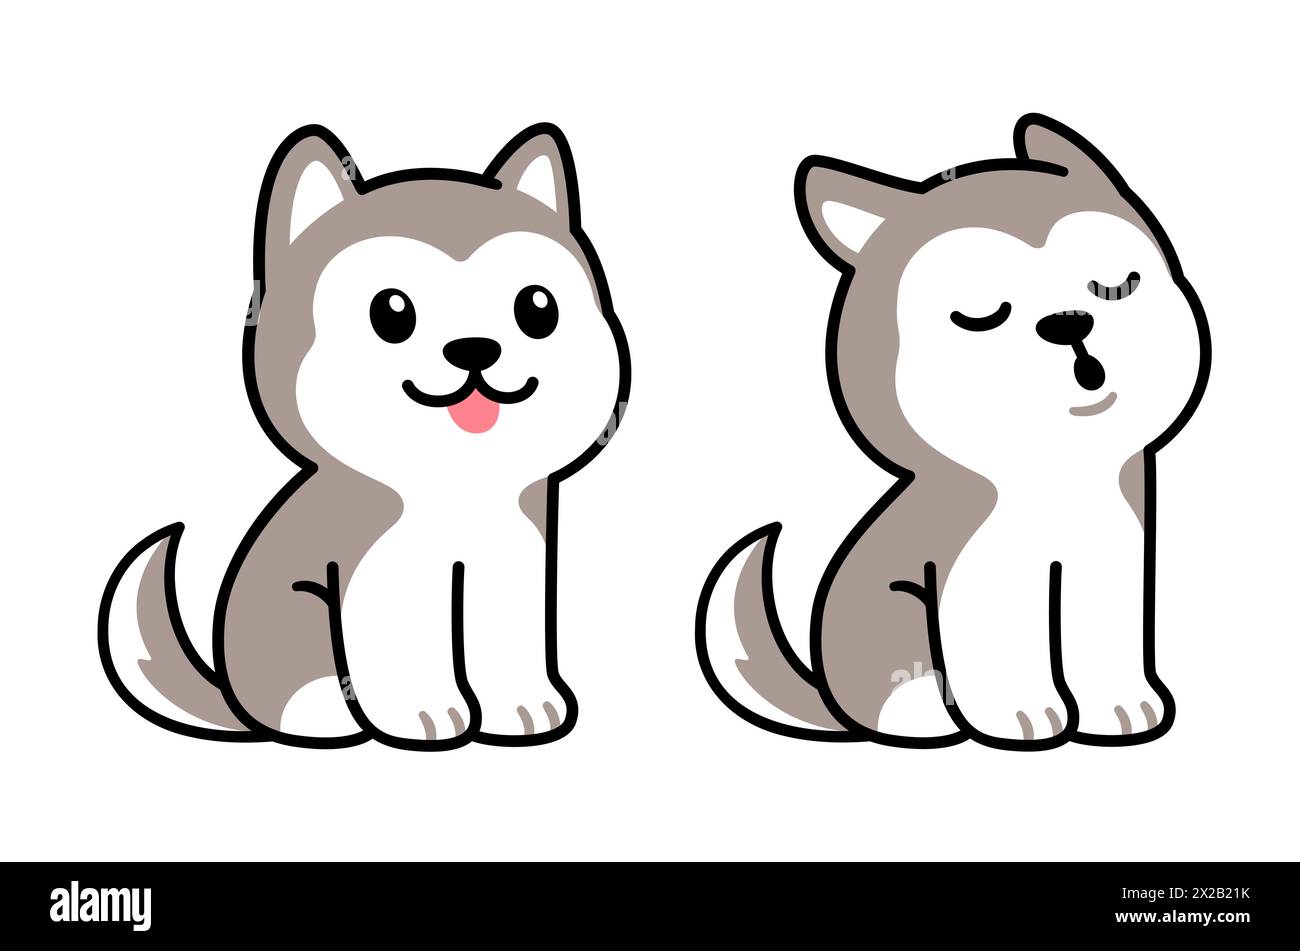 Niedlicher Cartoon-Husky-Welpe sitzt und heult. Entzückende kleine Hundezeichnung, isolierte Vektor-Illustration. Stock Vektor